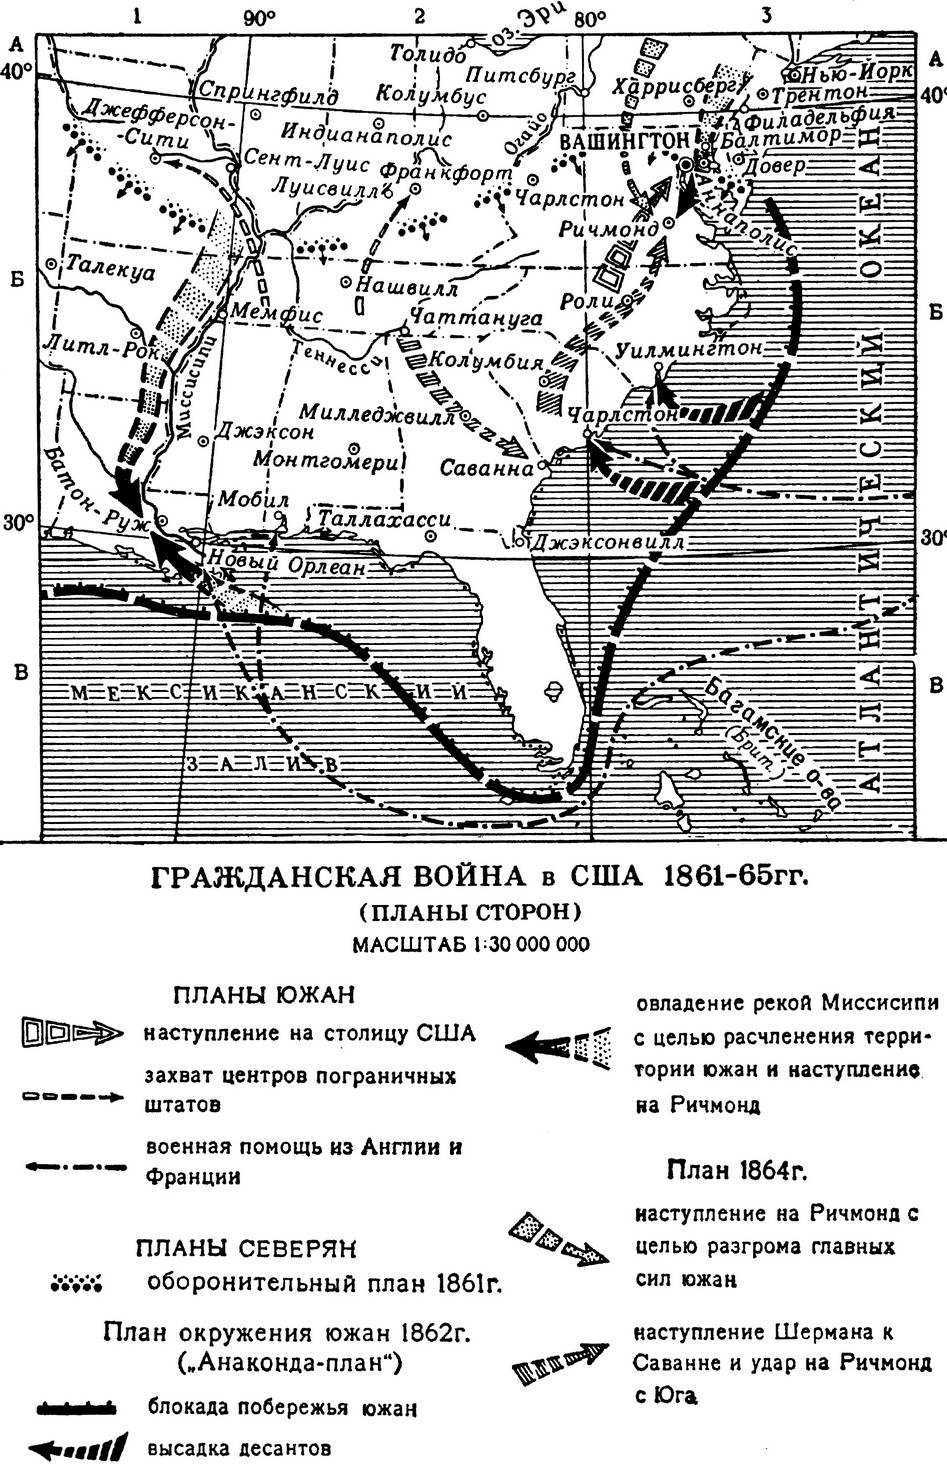 ГРАЖДАНСКАЯ ВОЙНА В США 1861-65 И РЕКОНСТРУКЦИЯ ЮГА 1865-77